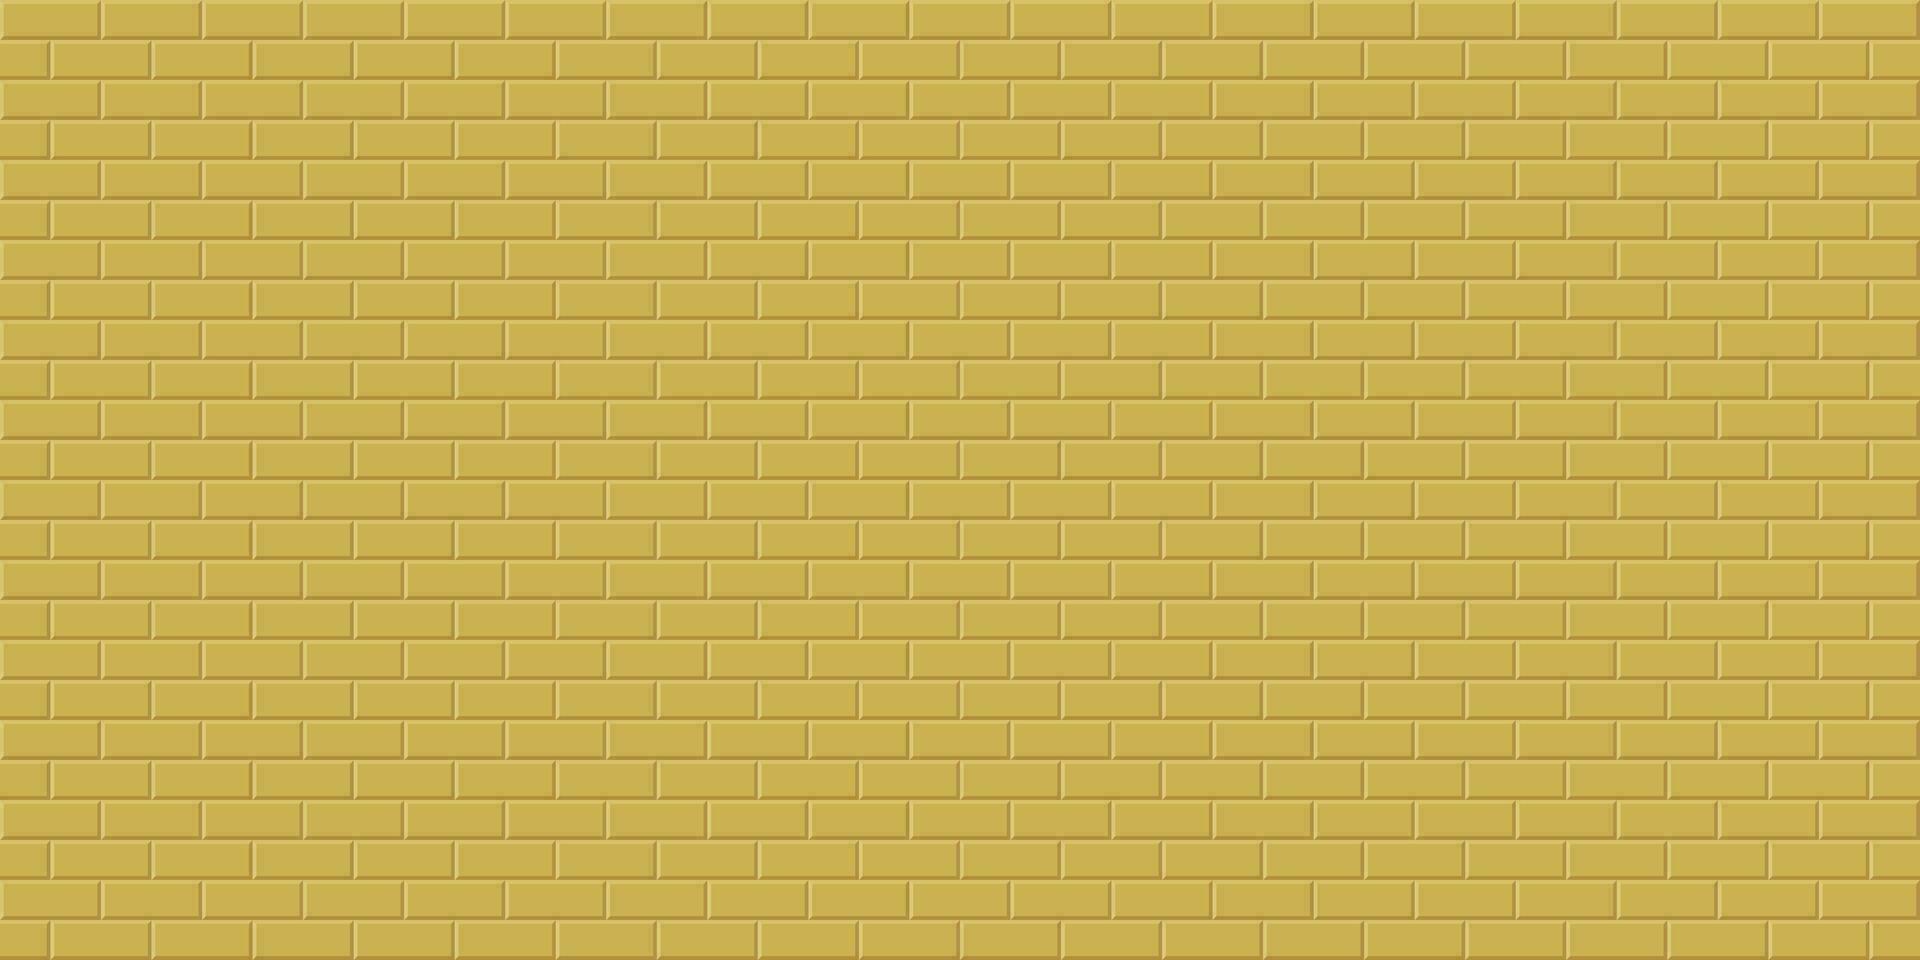 goud steen muur achtergrond, abstract meetkundig naadloos patroon ontwerp, vector illustratie